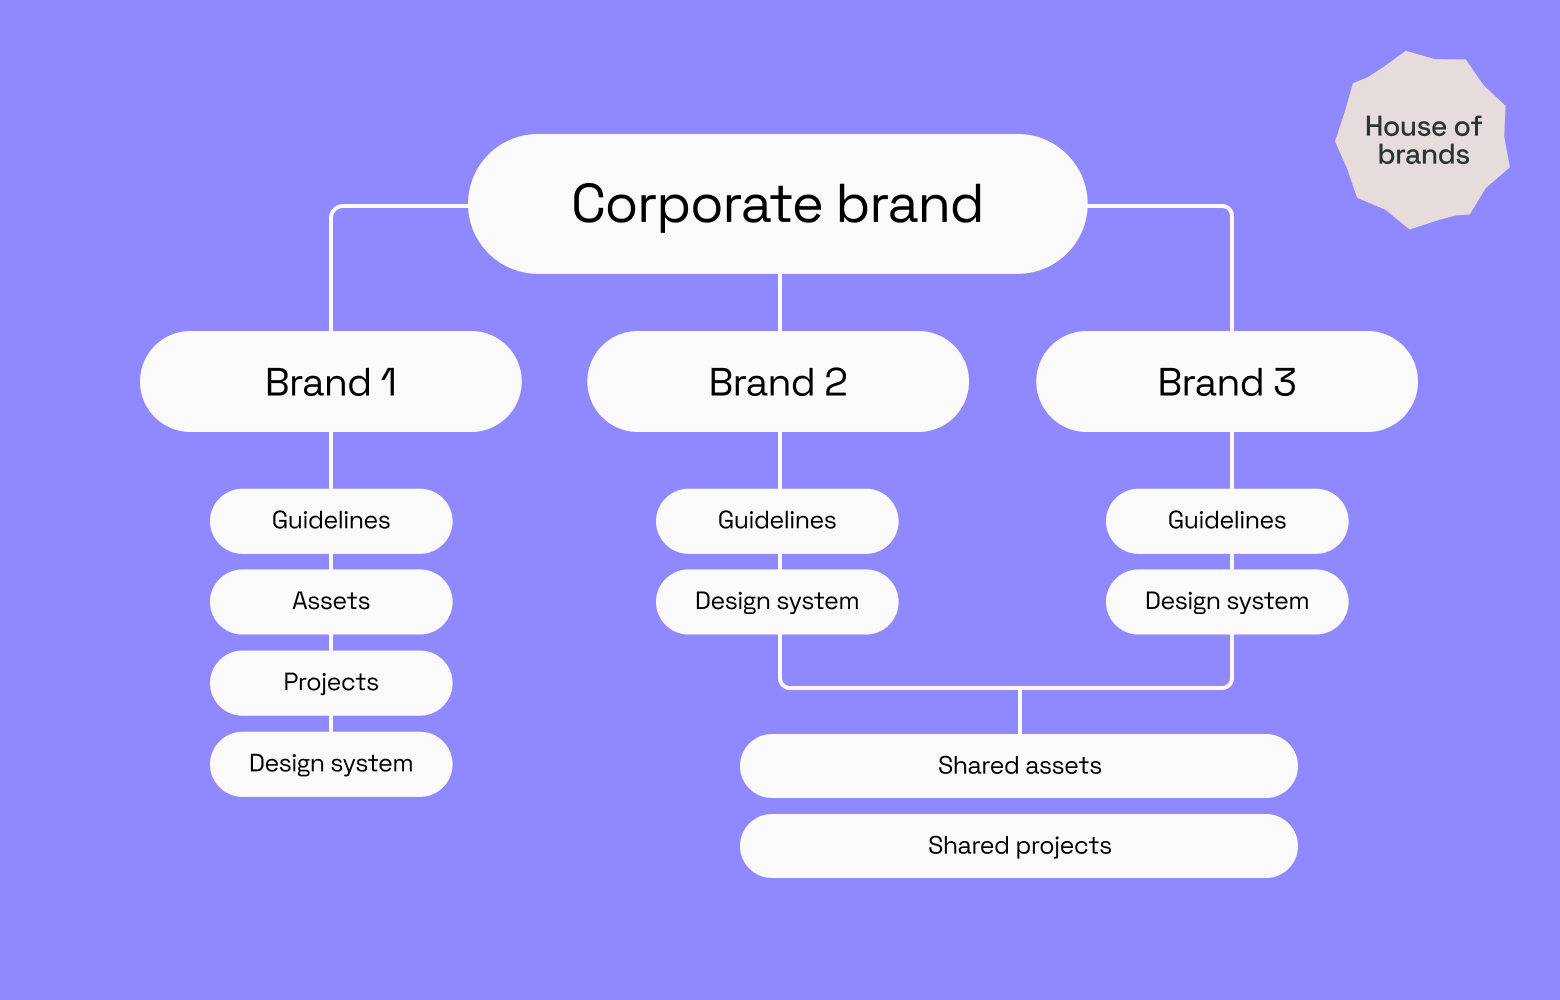 brand architecture presentation